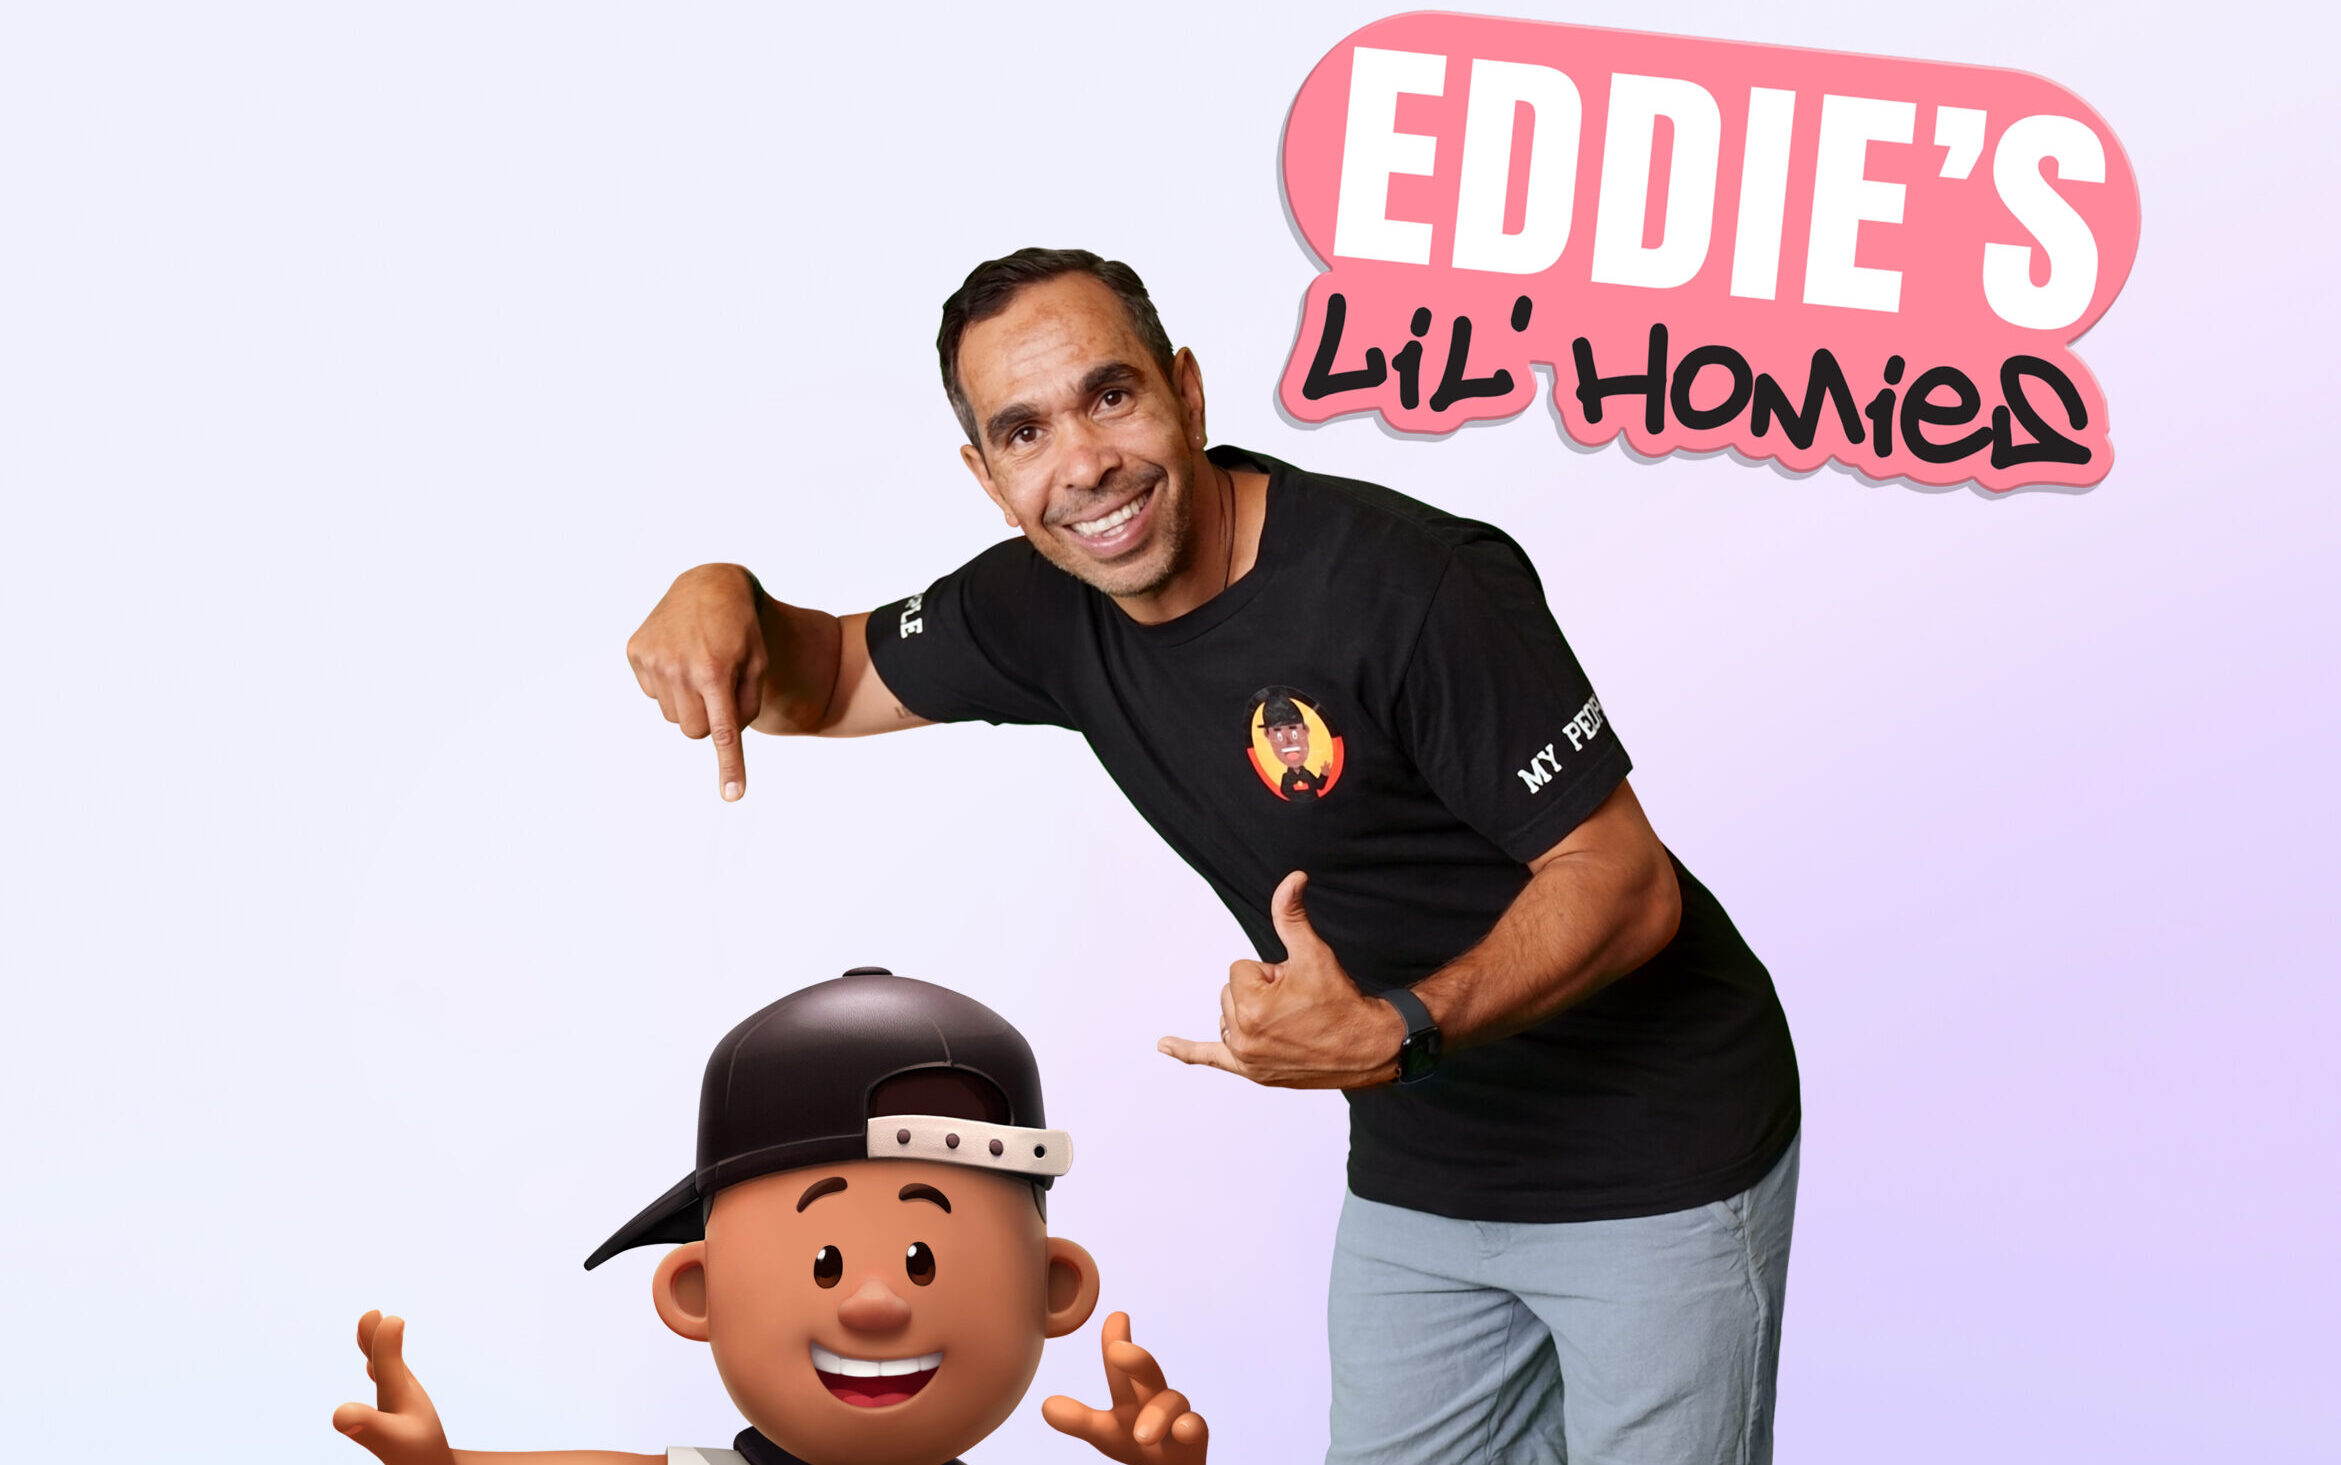 Eddie's Lil' Homies